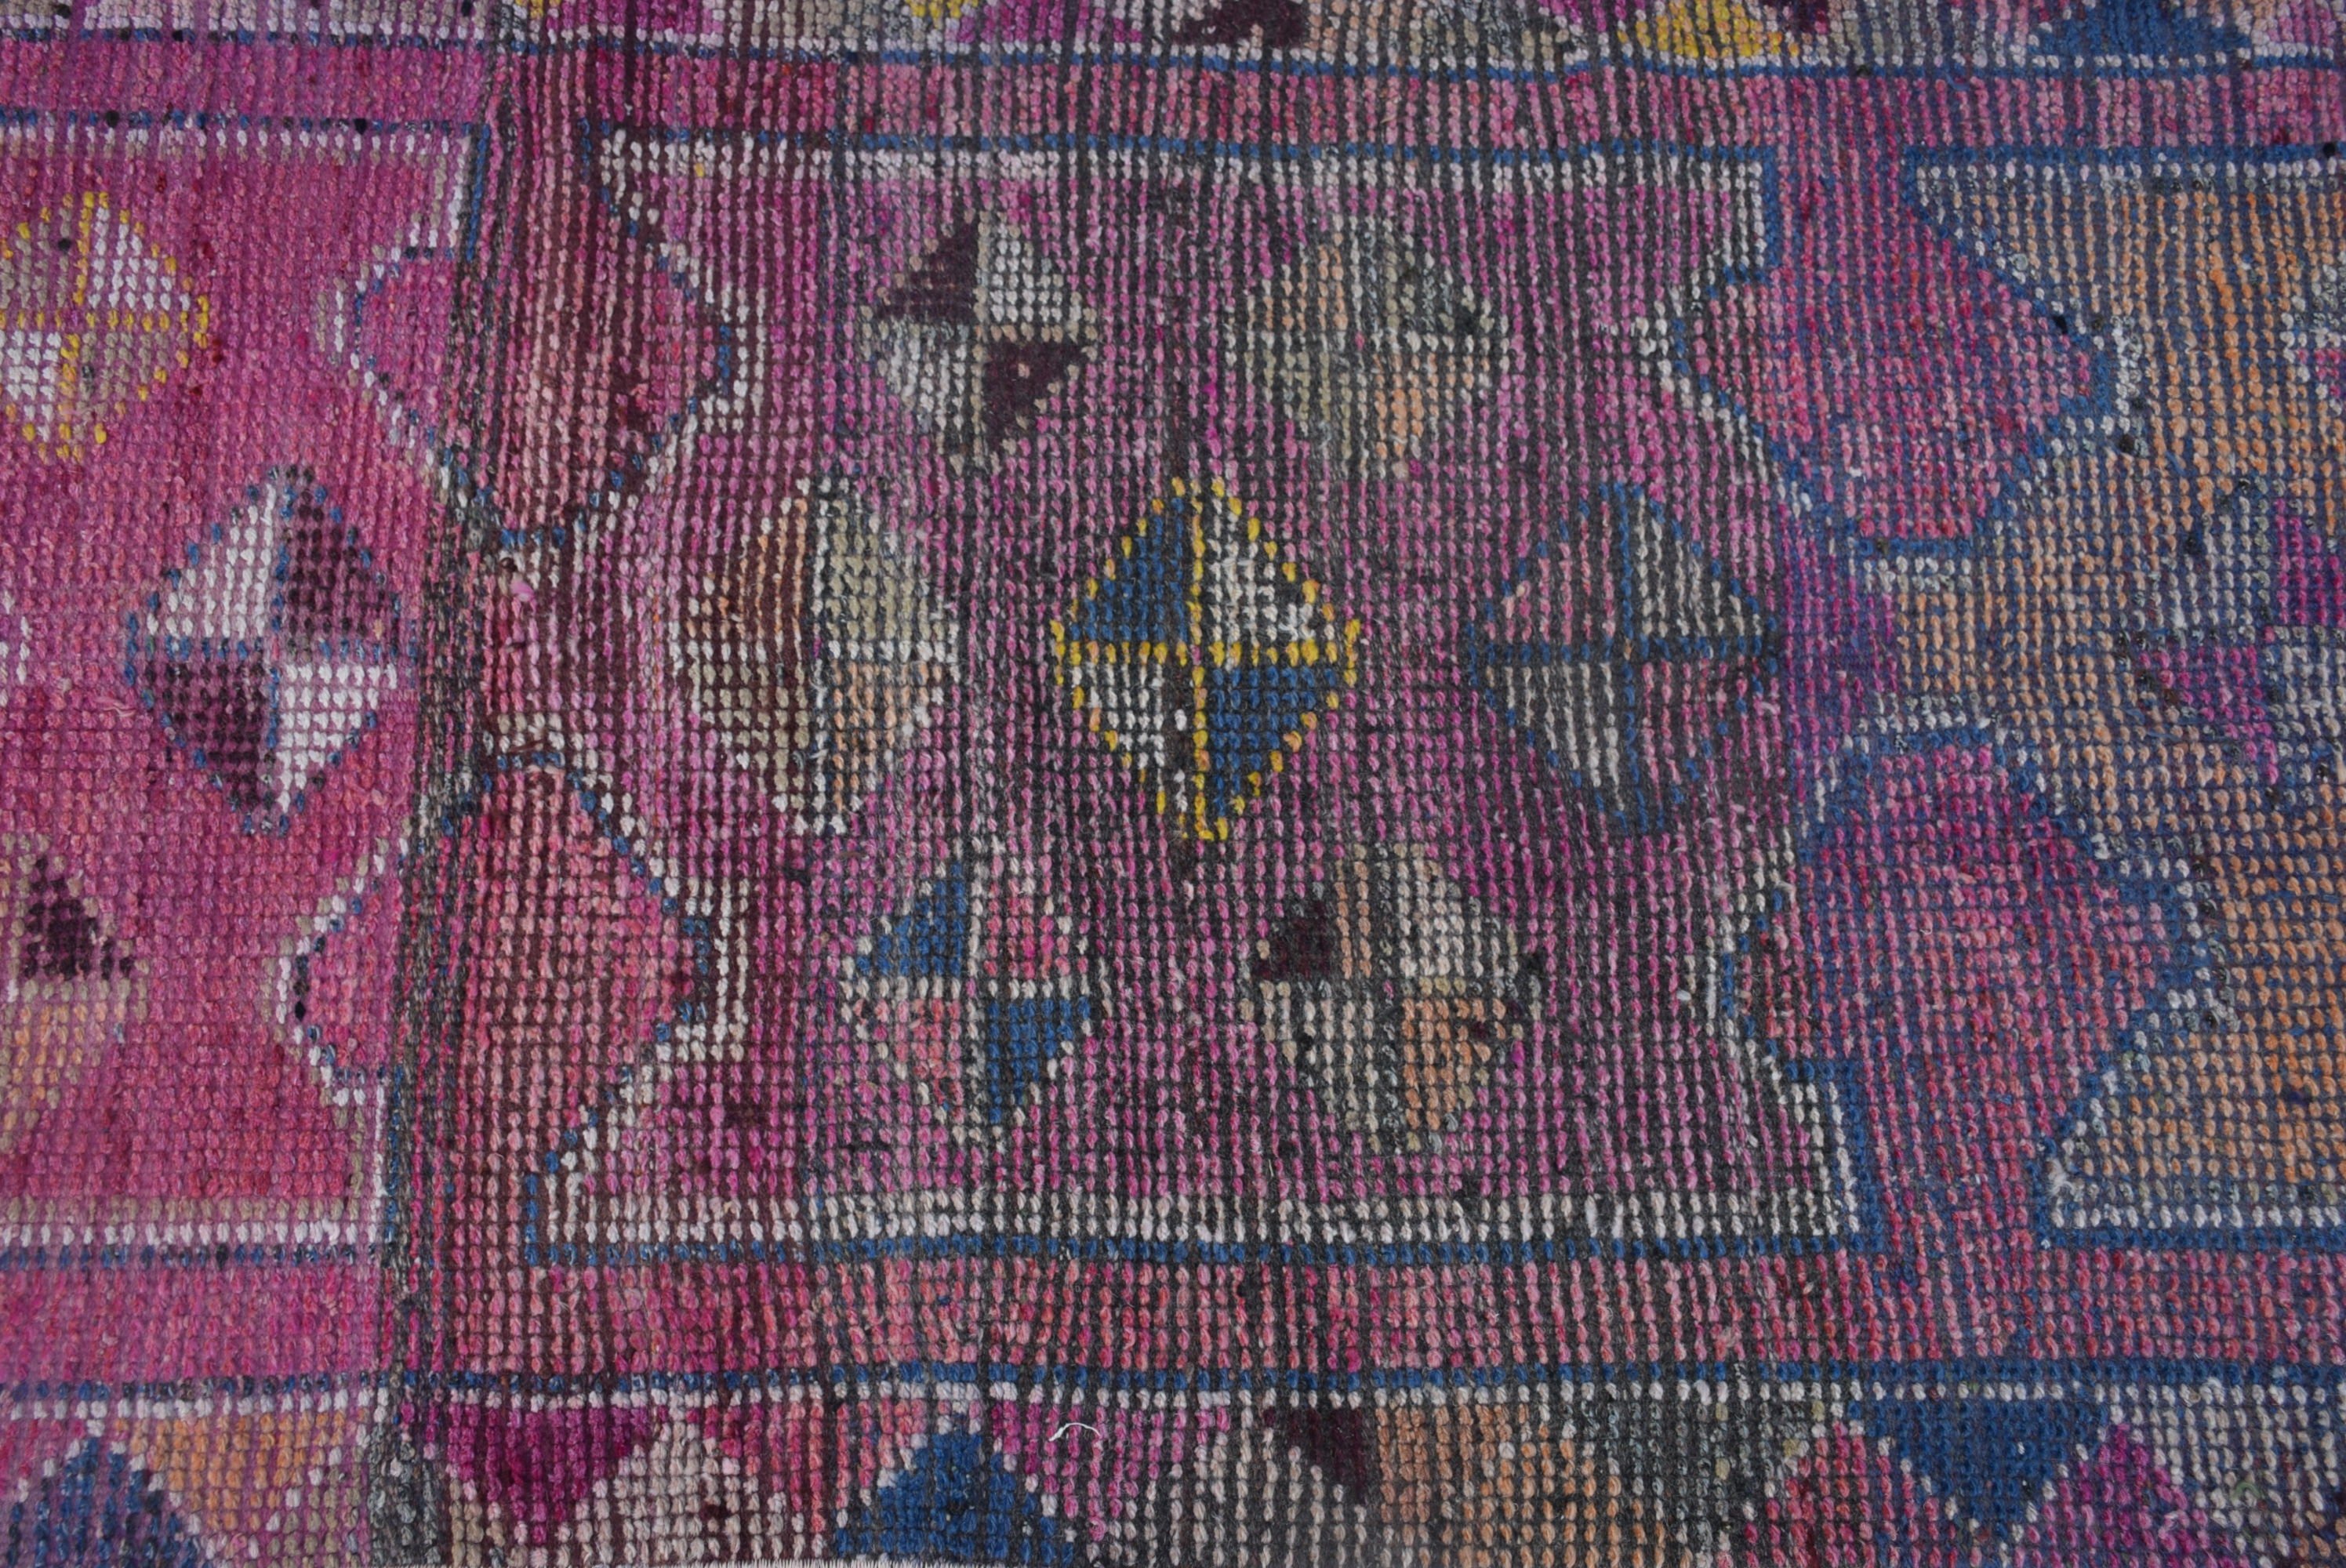 Stair Rug, Turkish Rug, Rugs for Stair, Corridor Rug, 2.8x9.5 ft Runner Rugs, Vintage Rug, Purple Antique Rug, Wool Rugs, Bedroom Rug